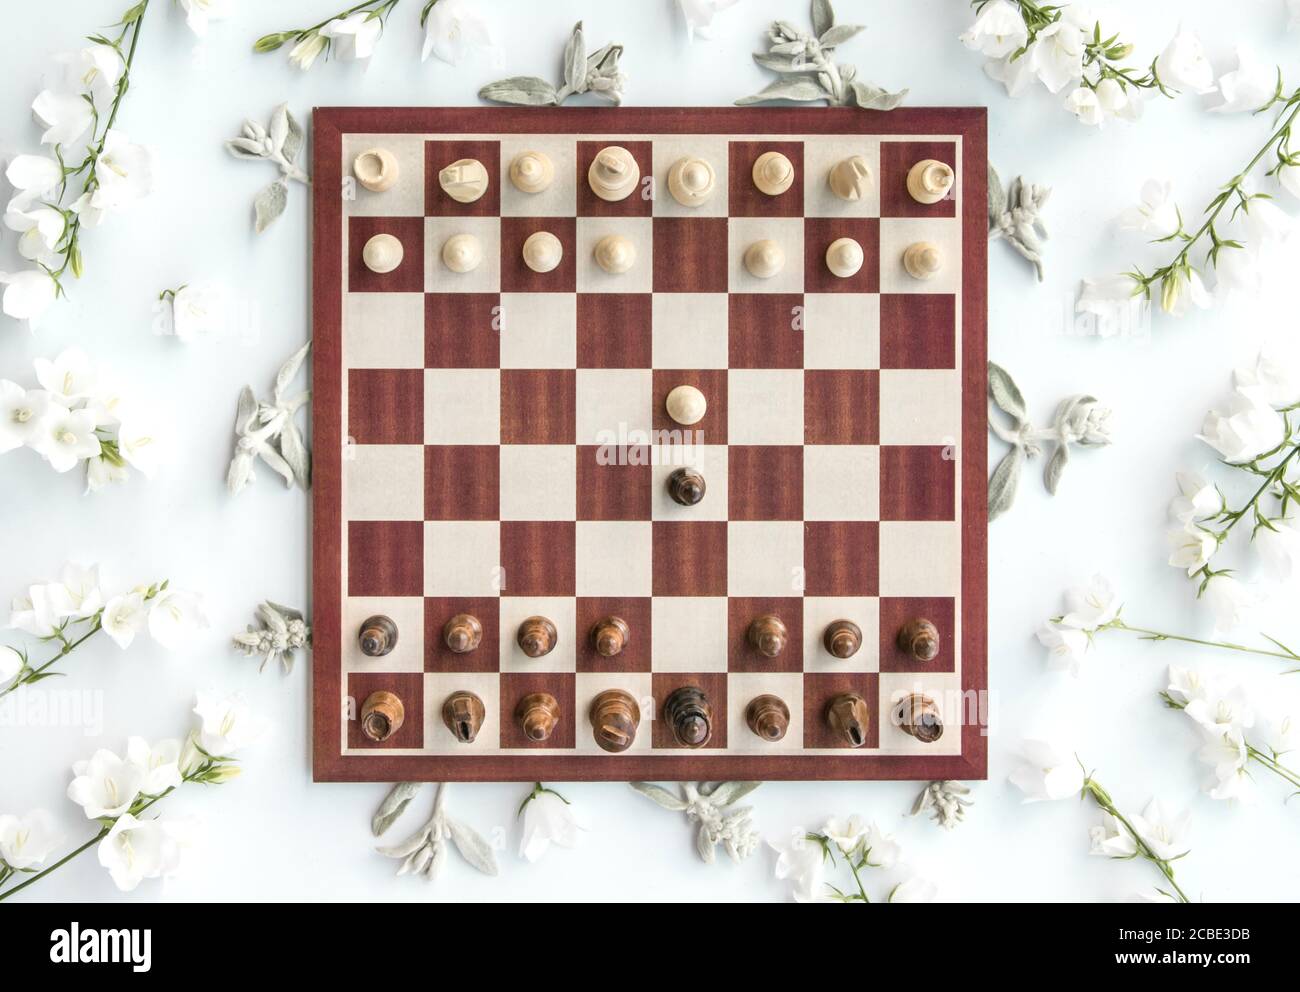 1.370 fotos de stock e banco de imagens de Chess Opening - Getty Images